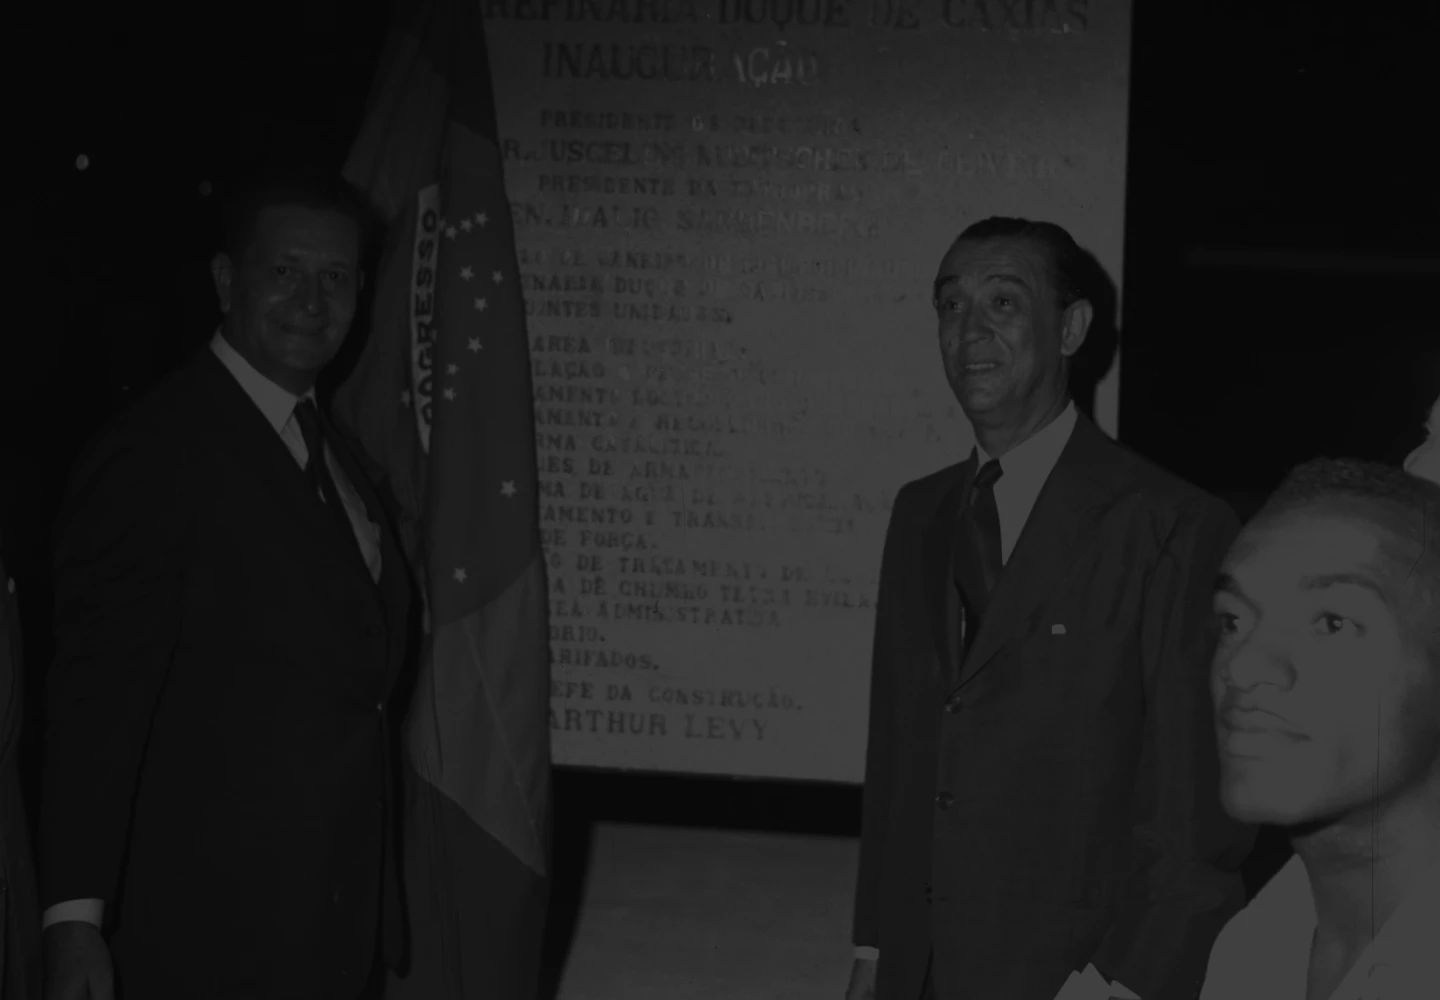 Fotografia em preto e branco da visita do então presidente Juscelino Kubitschek à refinaria Reduc.